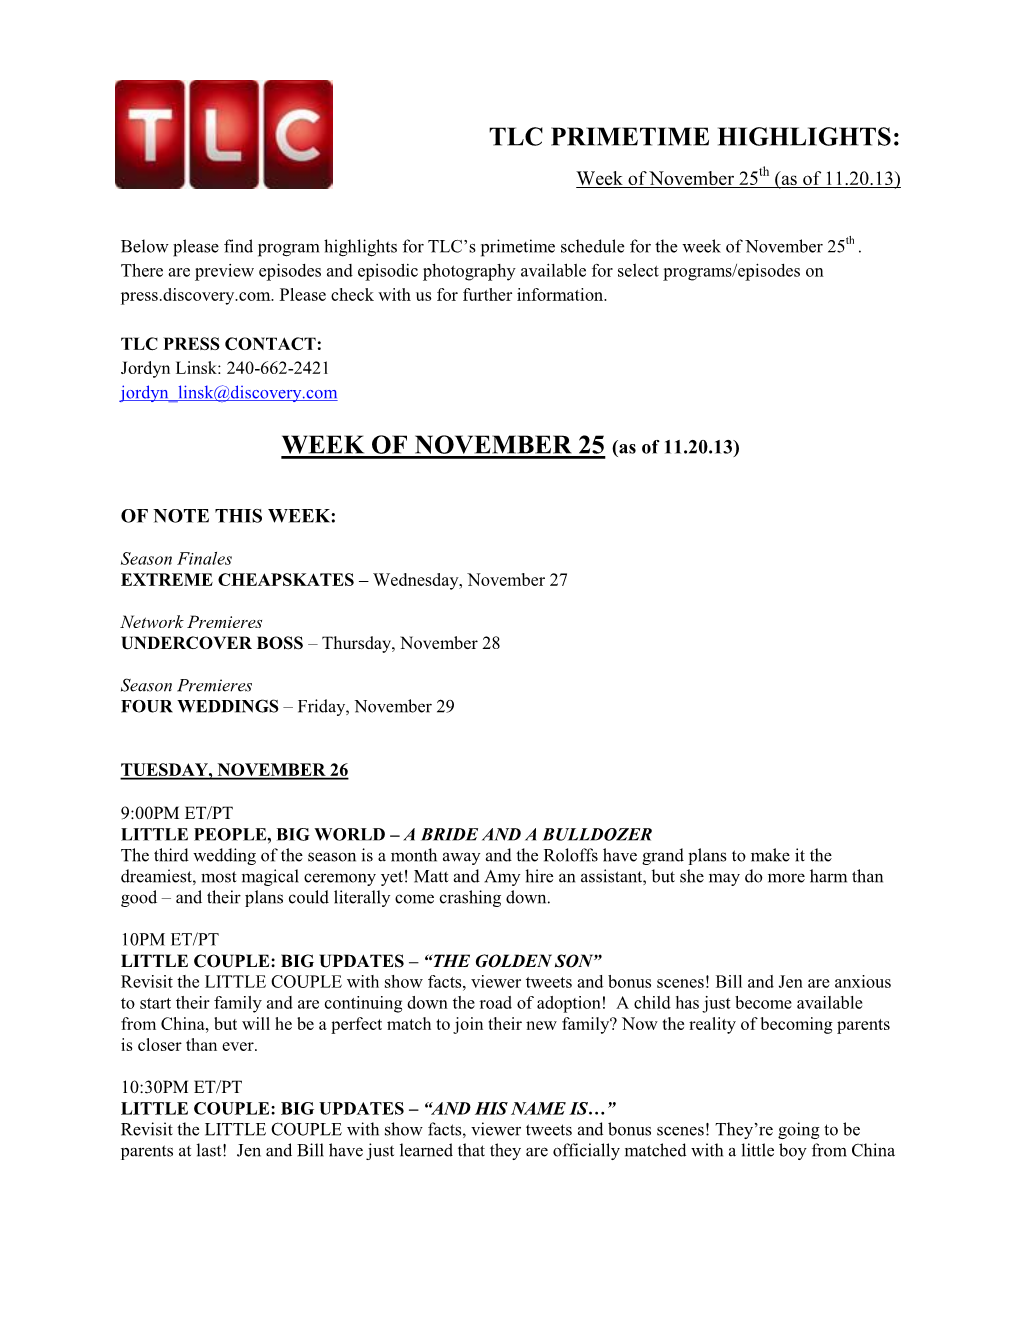 TLC PRIMETIME HIGHLIGHTS: Week of November 25Th (As of 11.20.13)